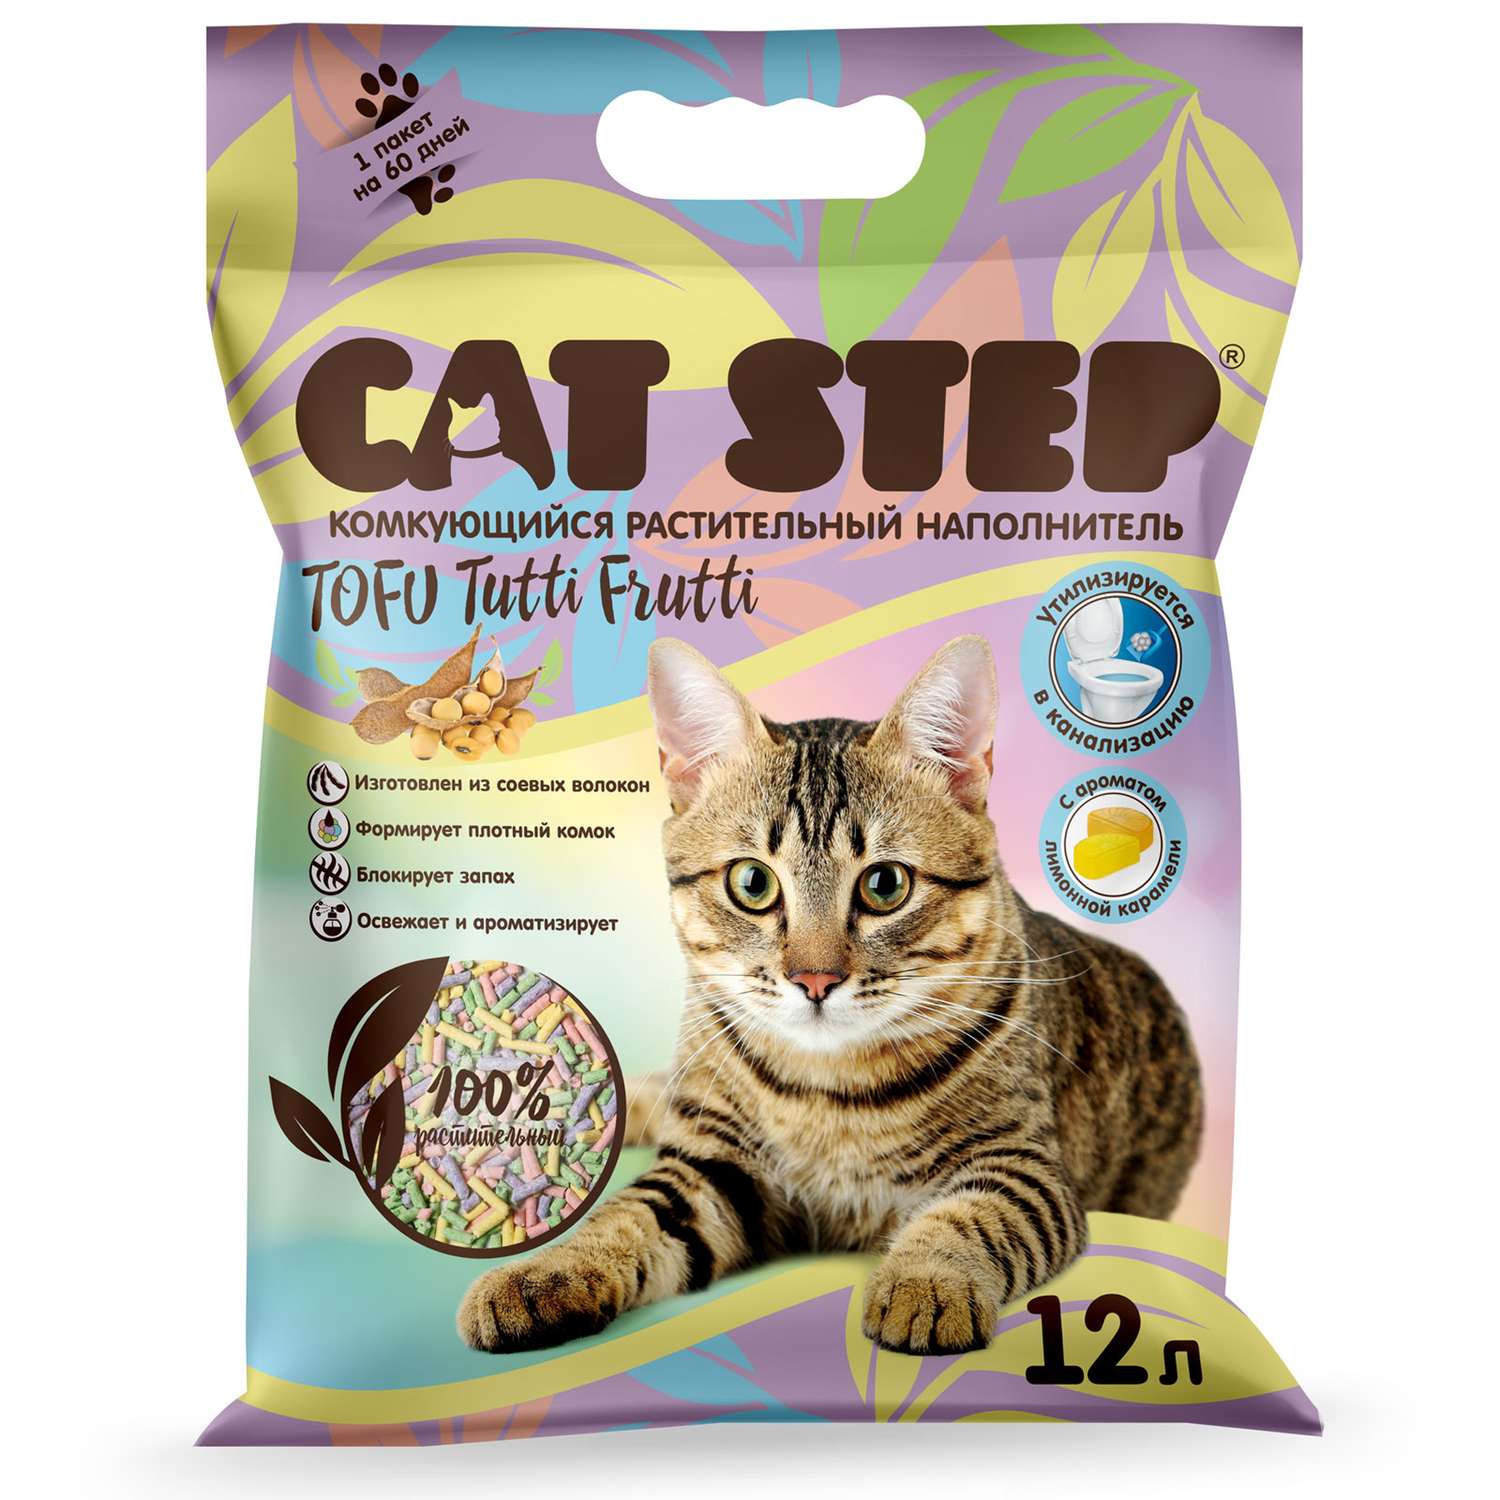 Наполнитель для кошек Cat Step Tofu Tutti Frutti комкующийся растительный 12л - фото 1